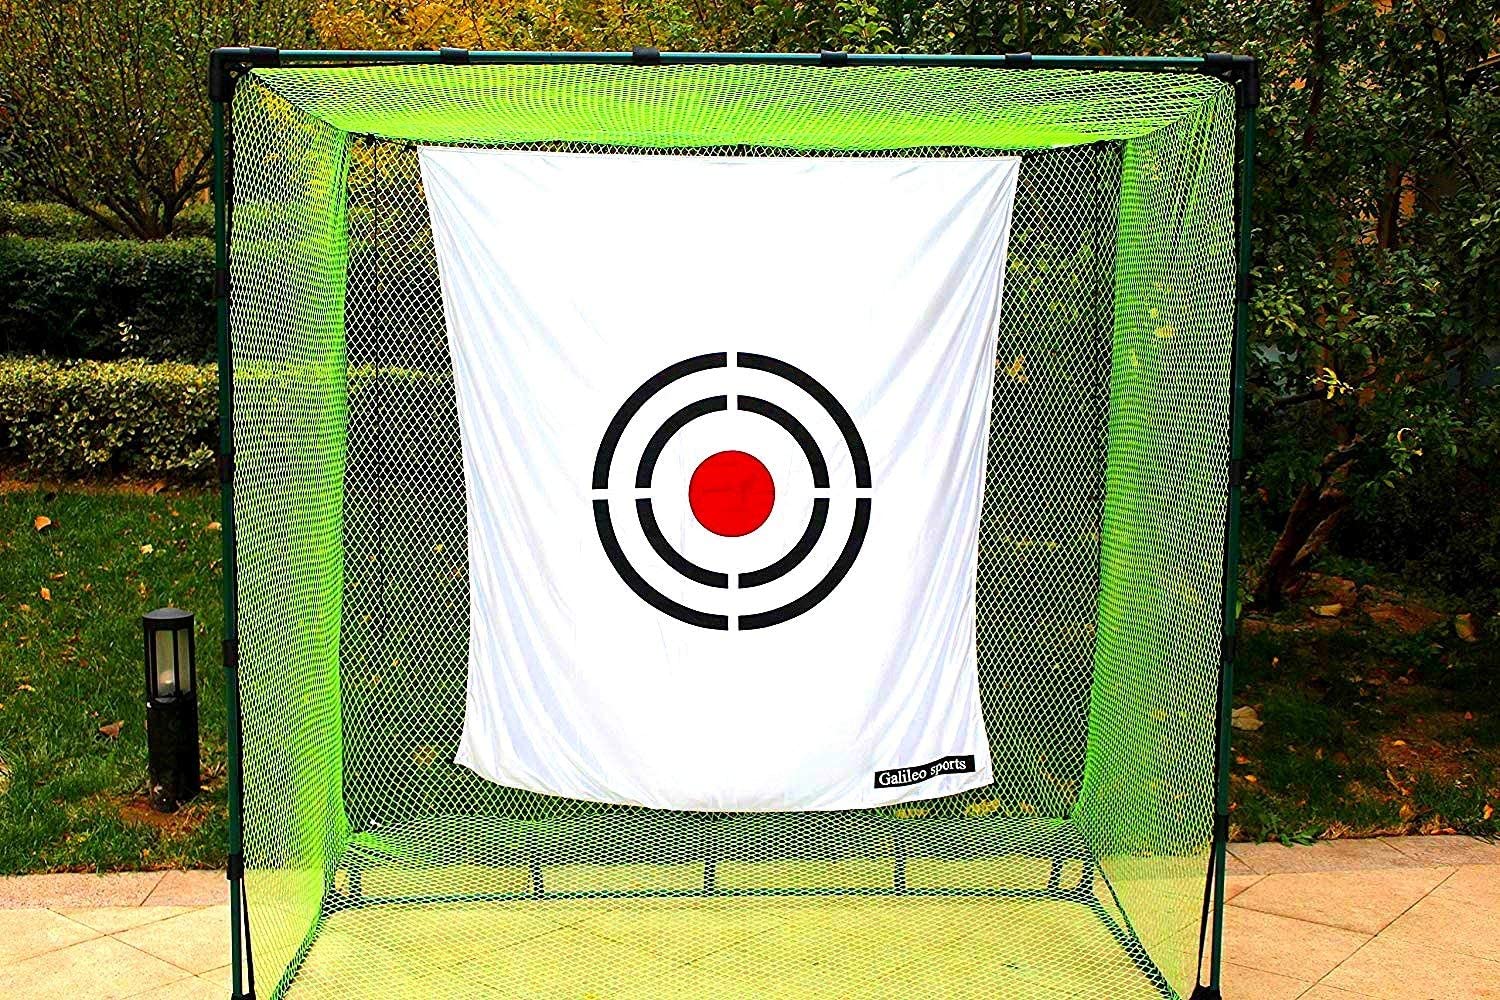 Galileo Practice Backstop Target Backyard Driving PVC Black Circle Style Target White| Tamano 5'x6'